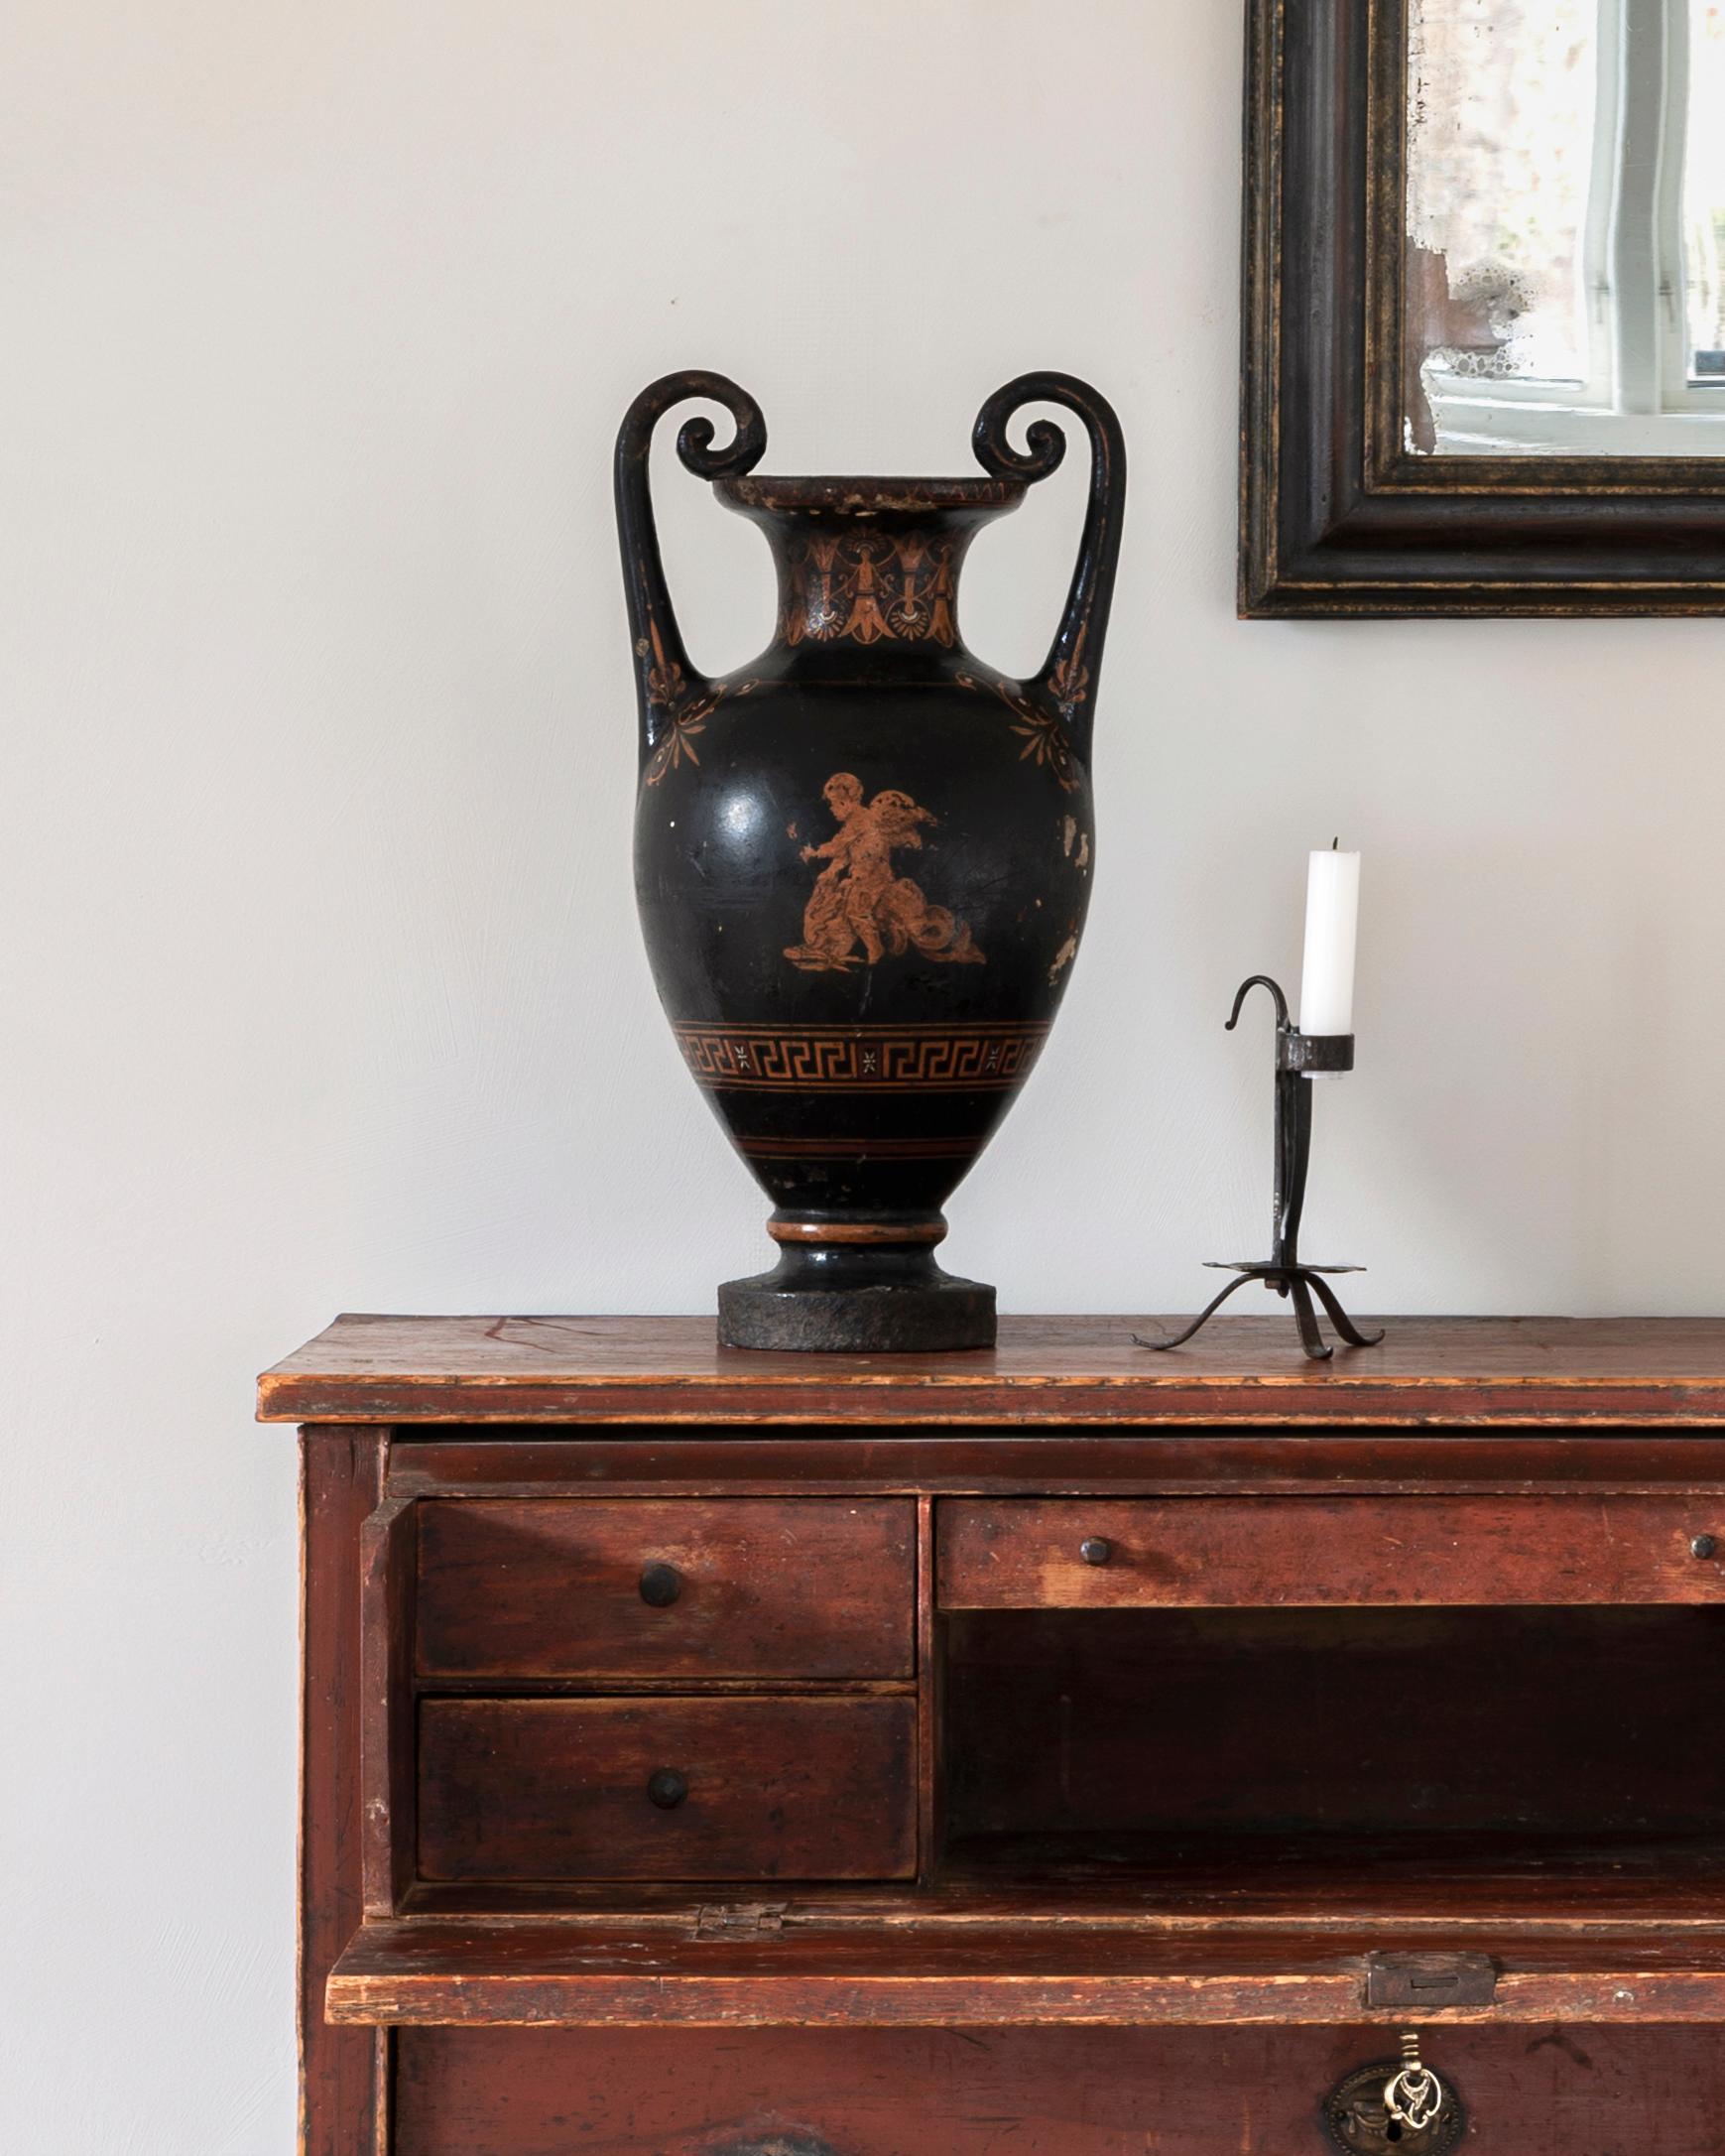 Seltene Urne / Vase aus Gusseisen mit mythologischem Motiv aus dem 19. Kopenhagen, Dänemark, um 1850.